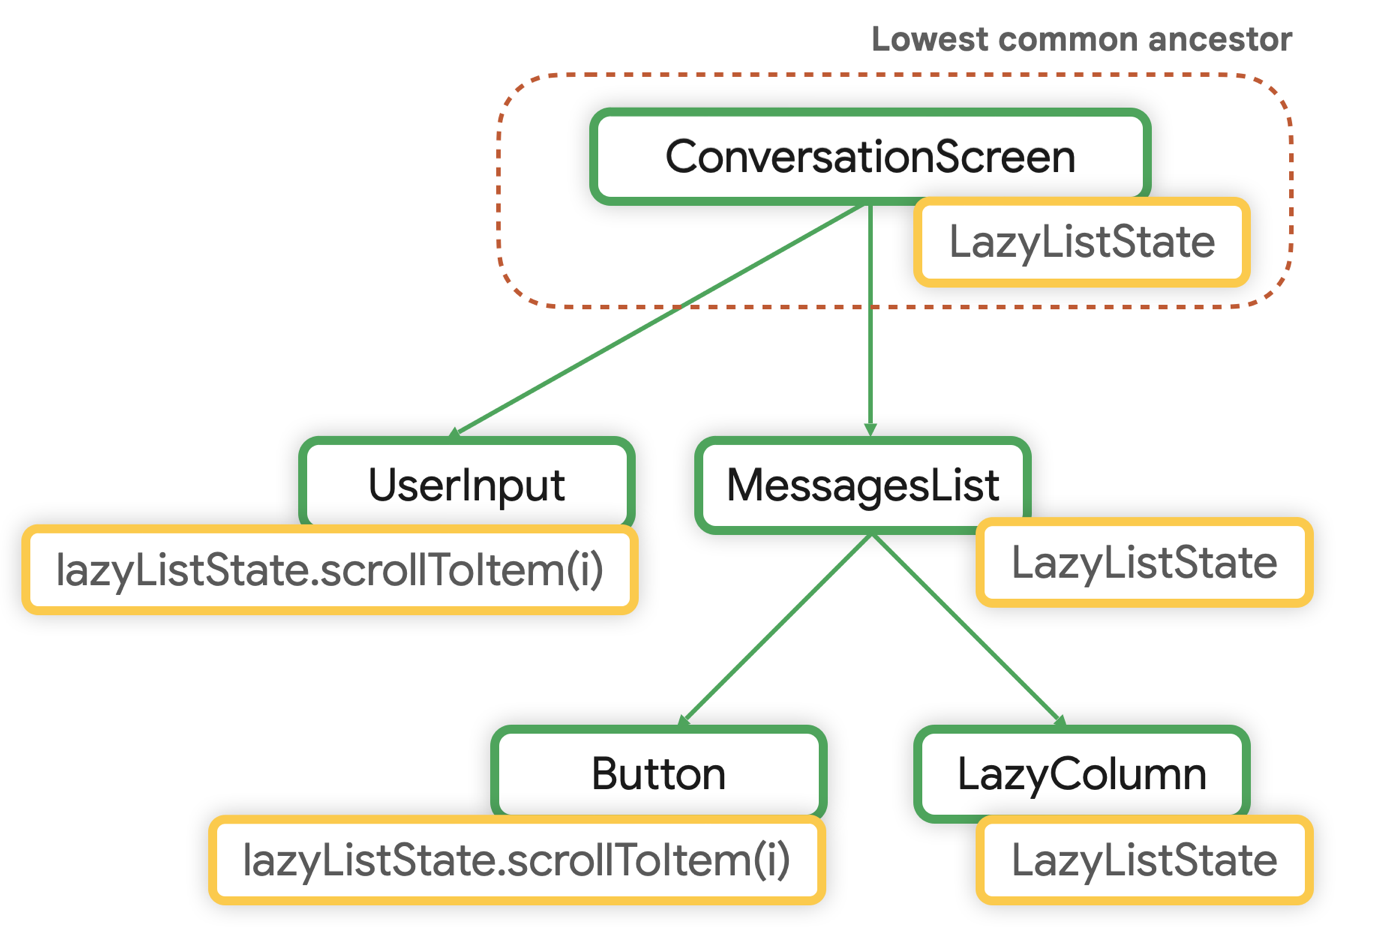 Le plus petit ancêtre commun de LazyListState est ConversationScreen.